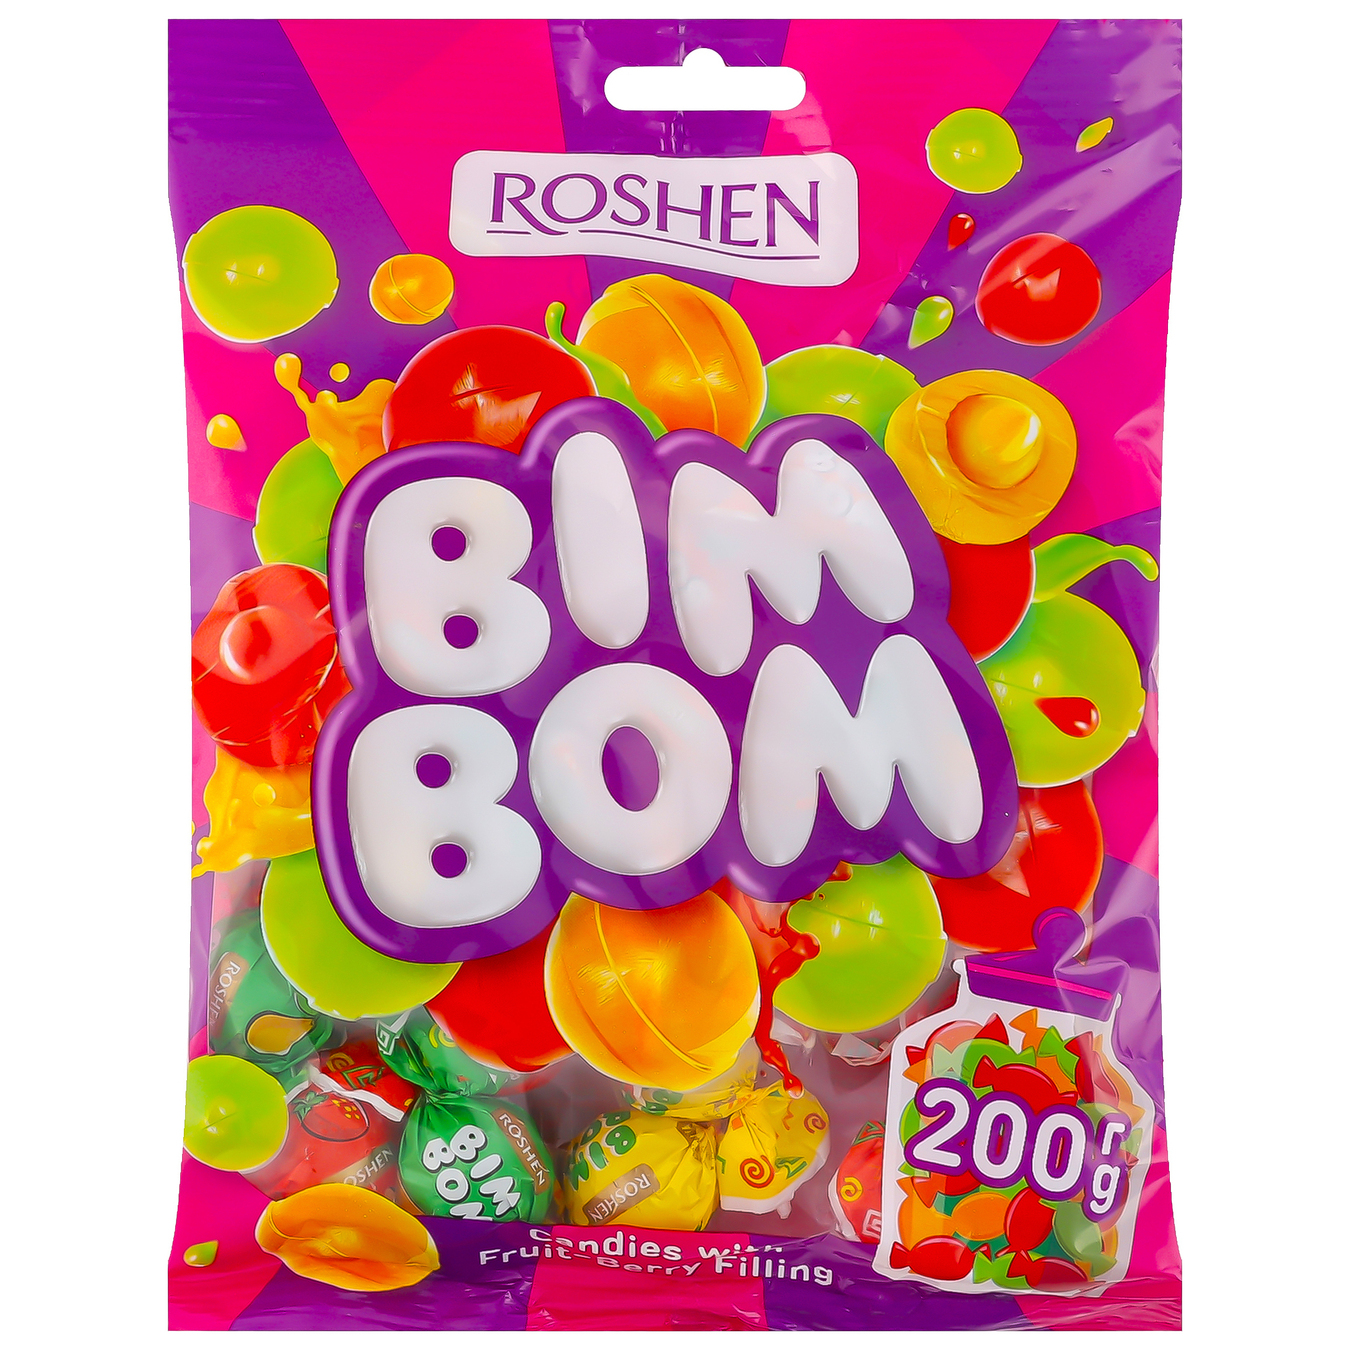 Roshen Bim Bom Caramels Candy 200g